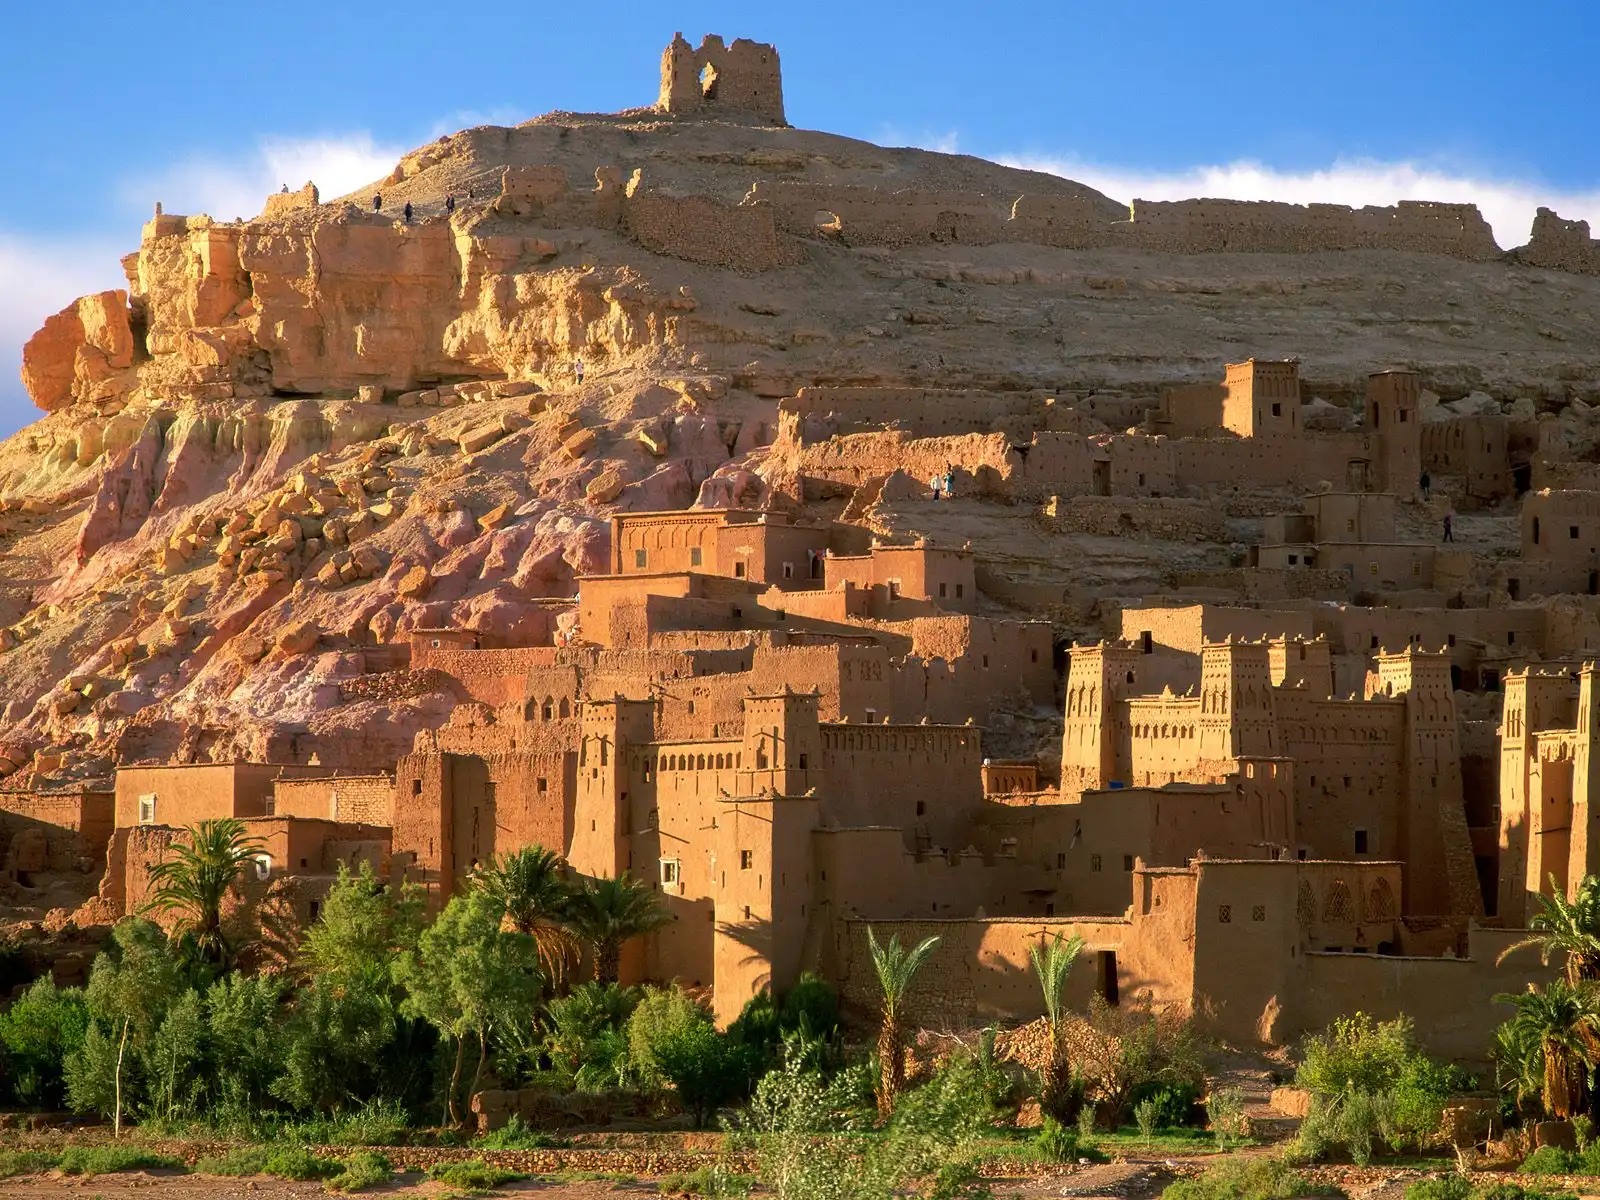 Morocco tourism